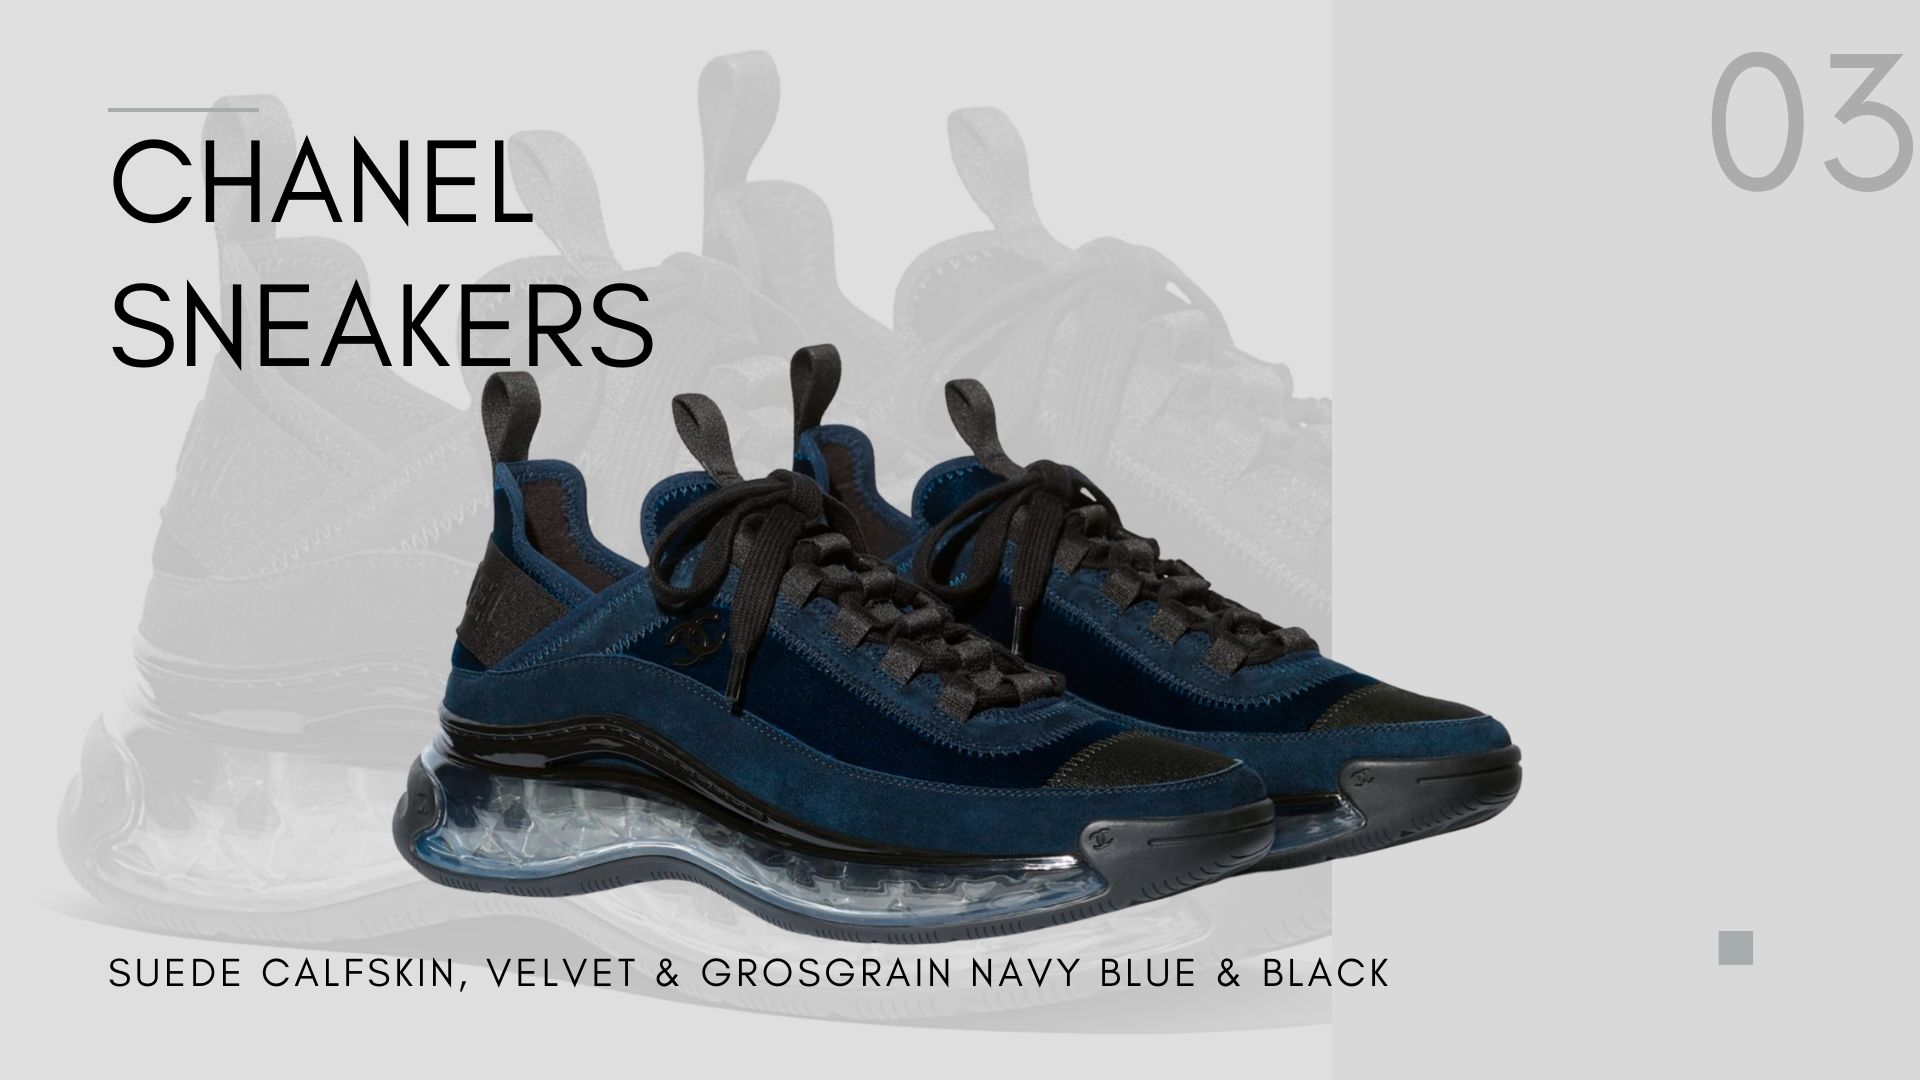  Suede Calfskin, Velvet & Grosgrain Navy Blue & Black